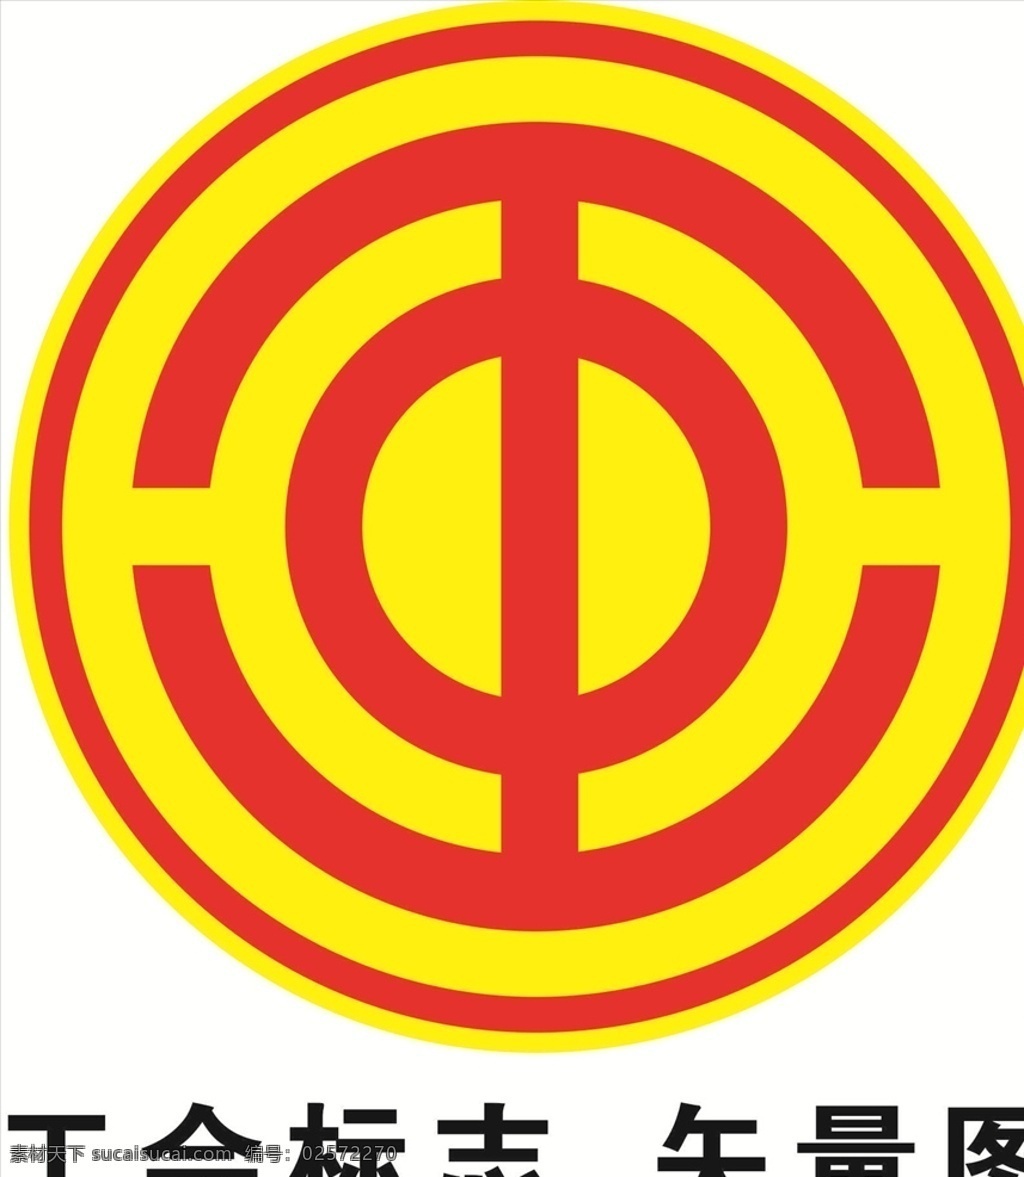 工会 标志 矢量图 工会矢量图 中国工会 工会标志 工业